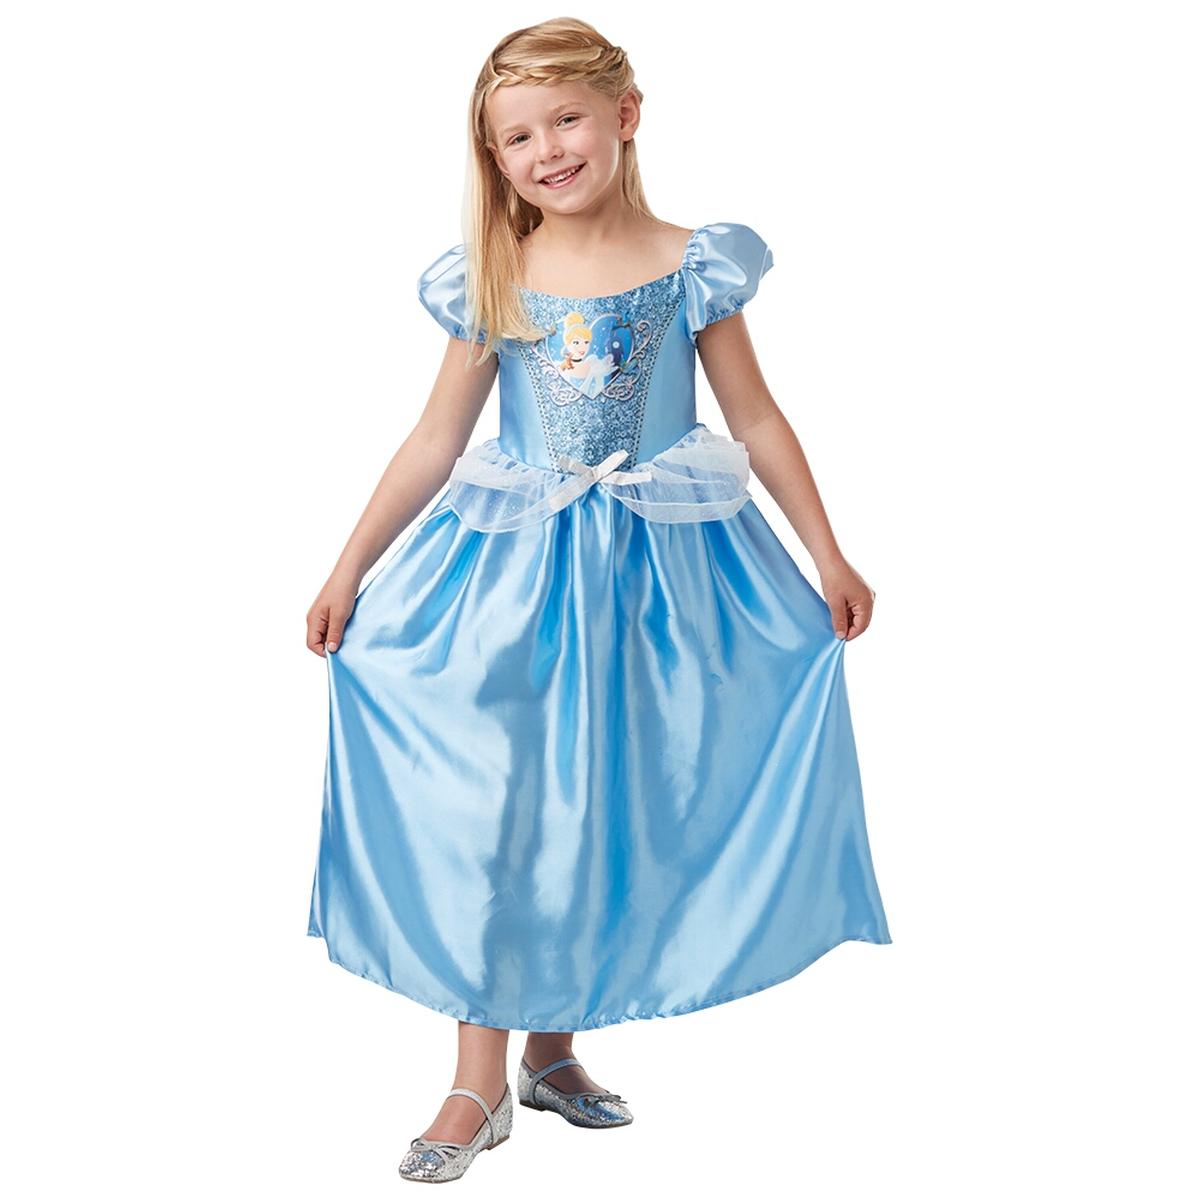 Restaurar asesinato Supermercado Princesas Disney - Cenicienta - Disfraz Lentejuelas 7-8 años | Toys R' Us |  Toys"R"Us España